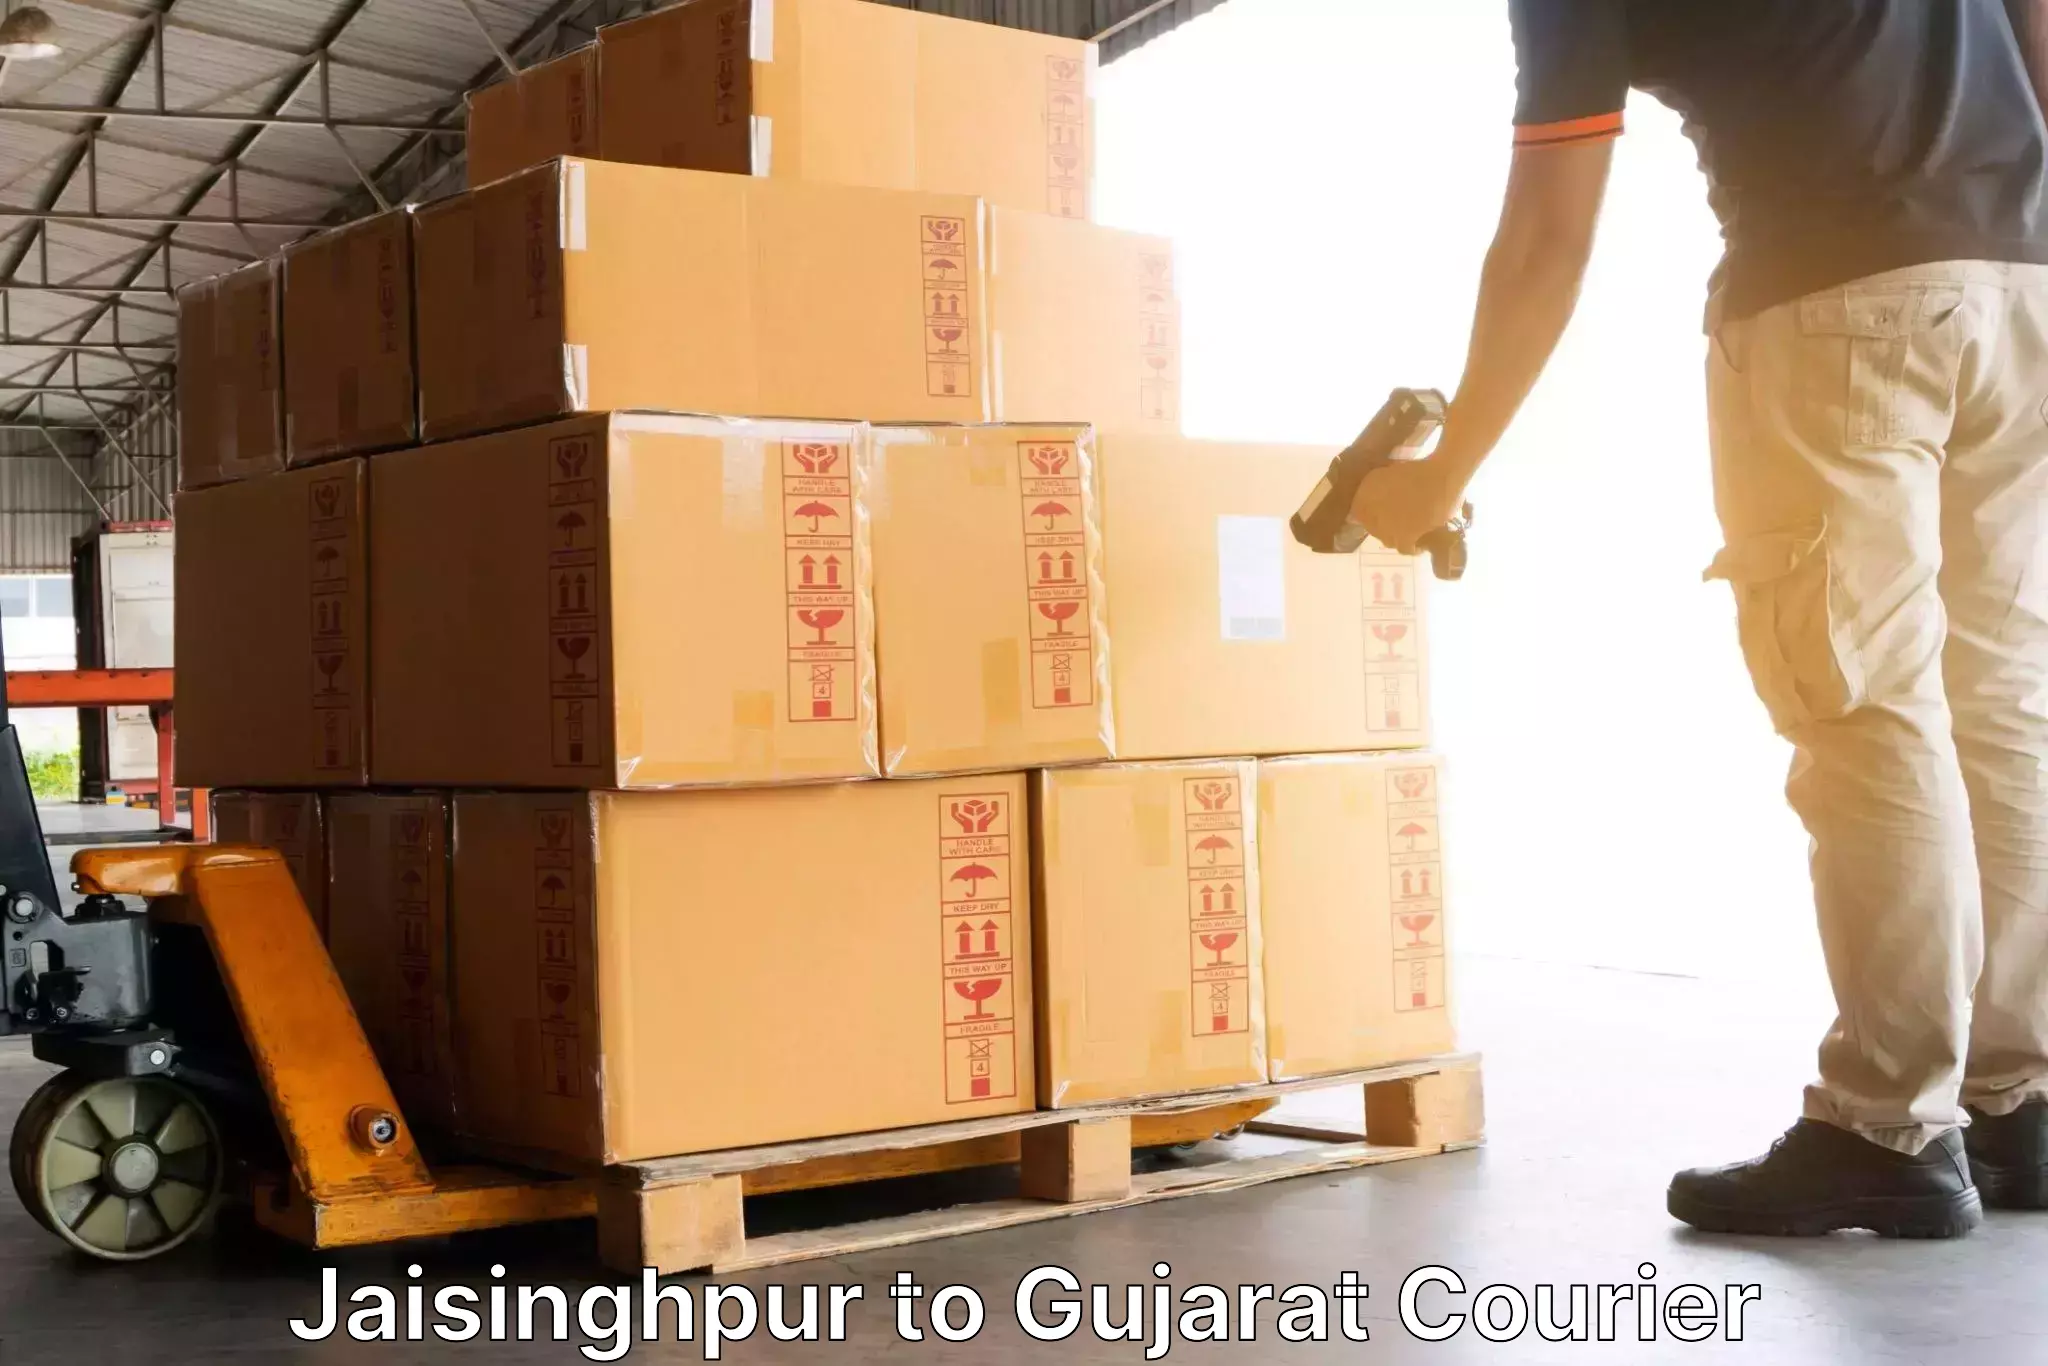 Multi-national courier services Jaisinghpur to Bhabhar